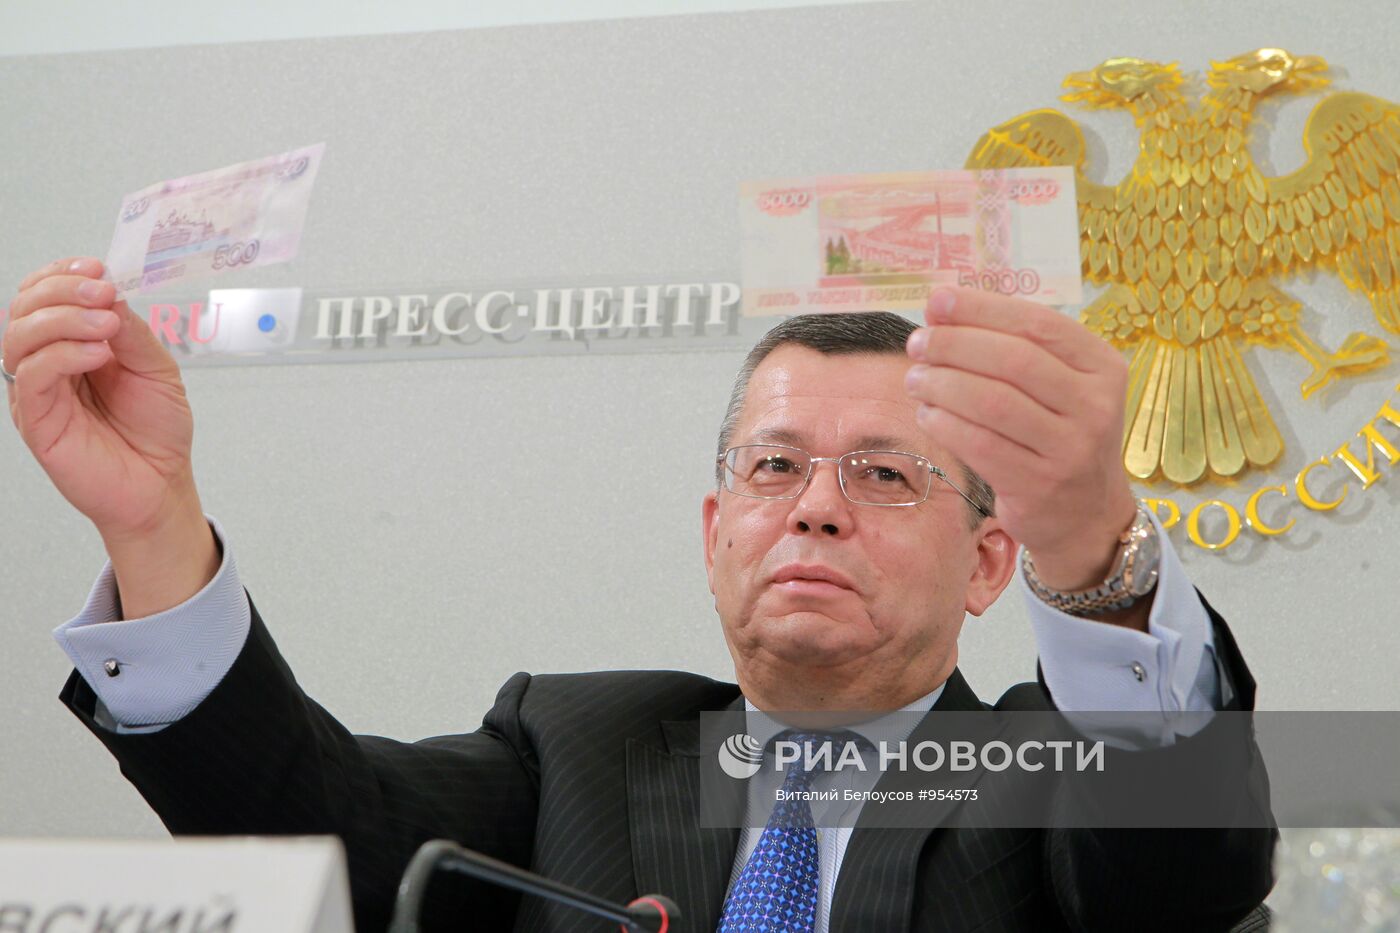 Центробанк обновил купюры 500 и 5000 рублей